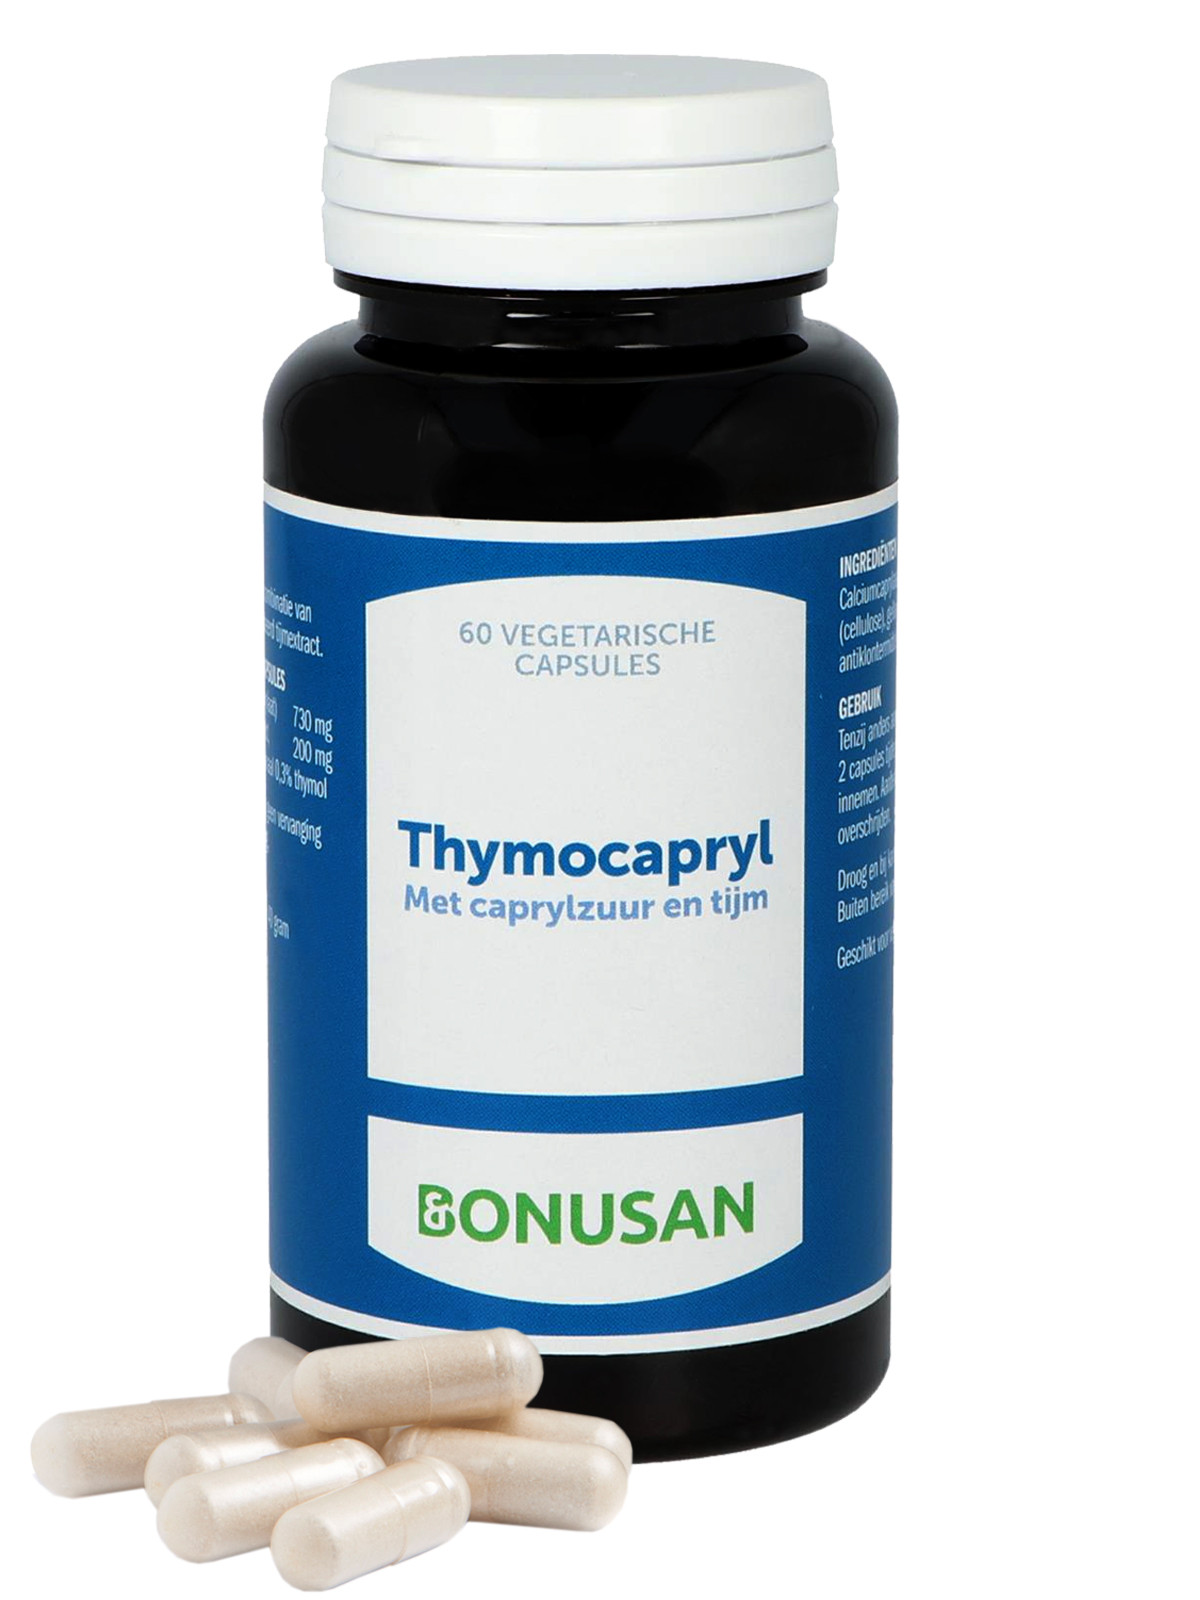 Bonusan - Thymocapryl